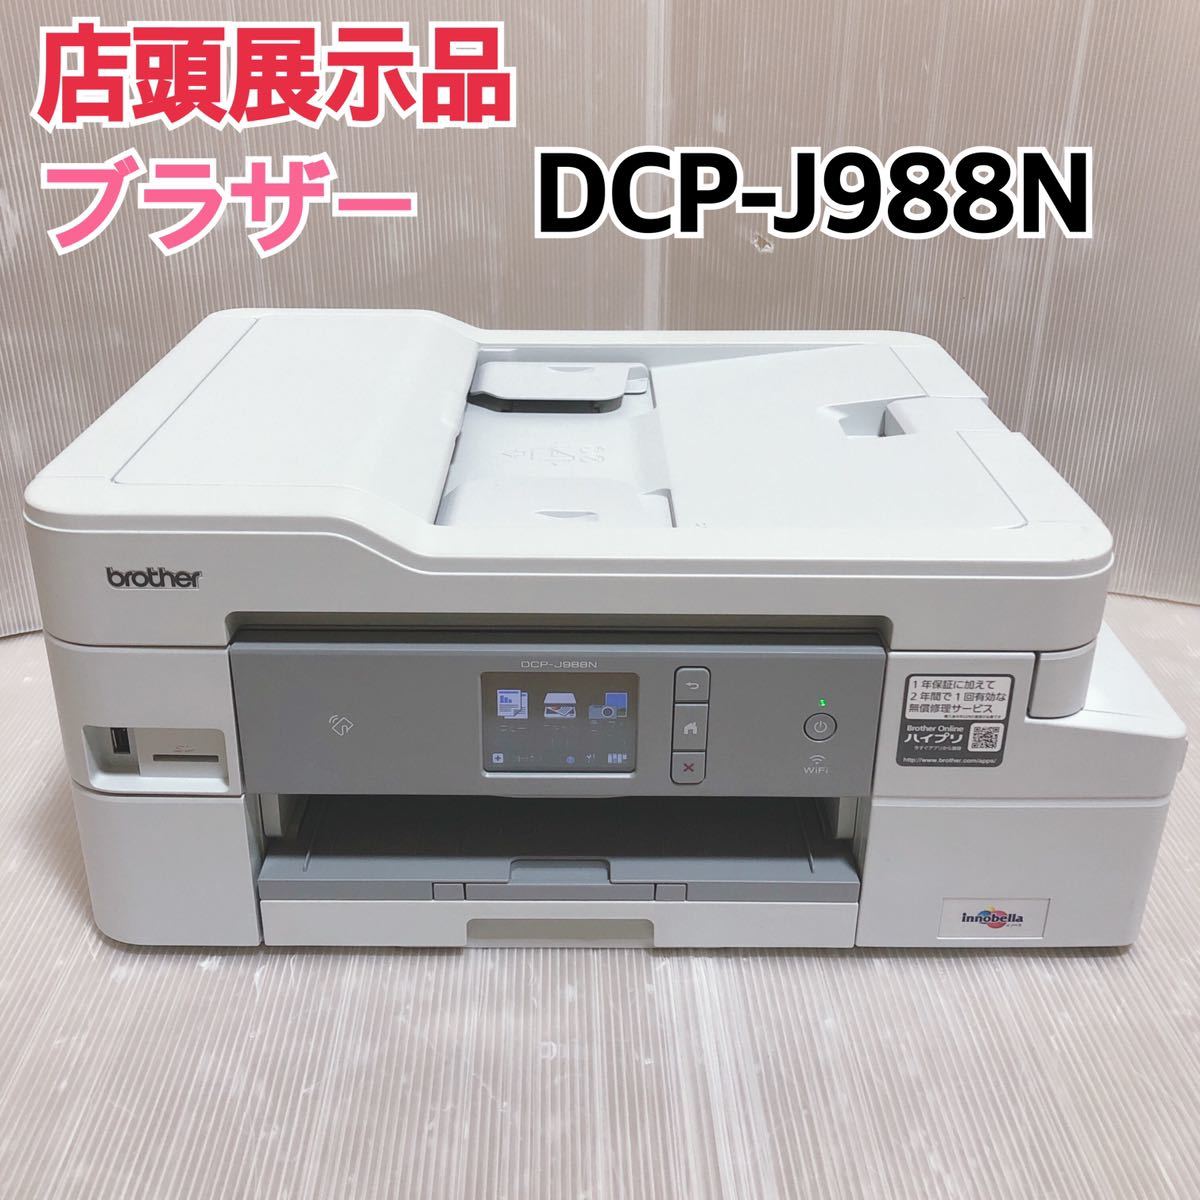 大人気100%新品 brother DCP-J988N インクジェットプリンター複合